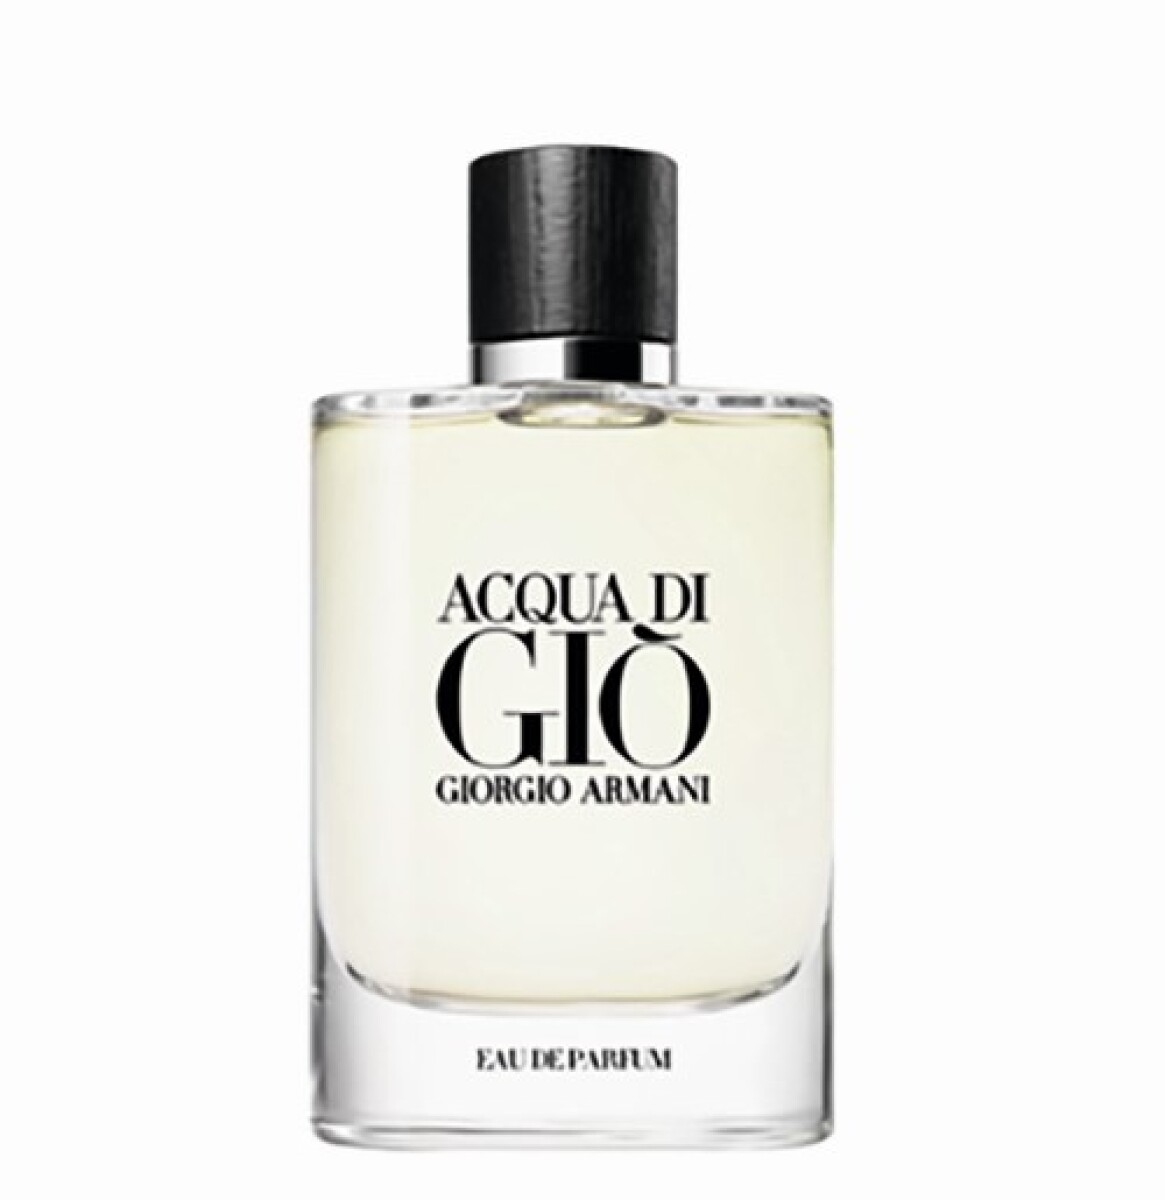 Acqua di Gio eau de parfum Giorgio Armani - 40 ml 